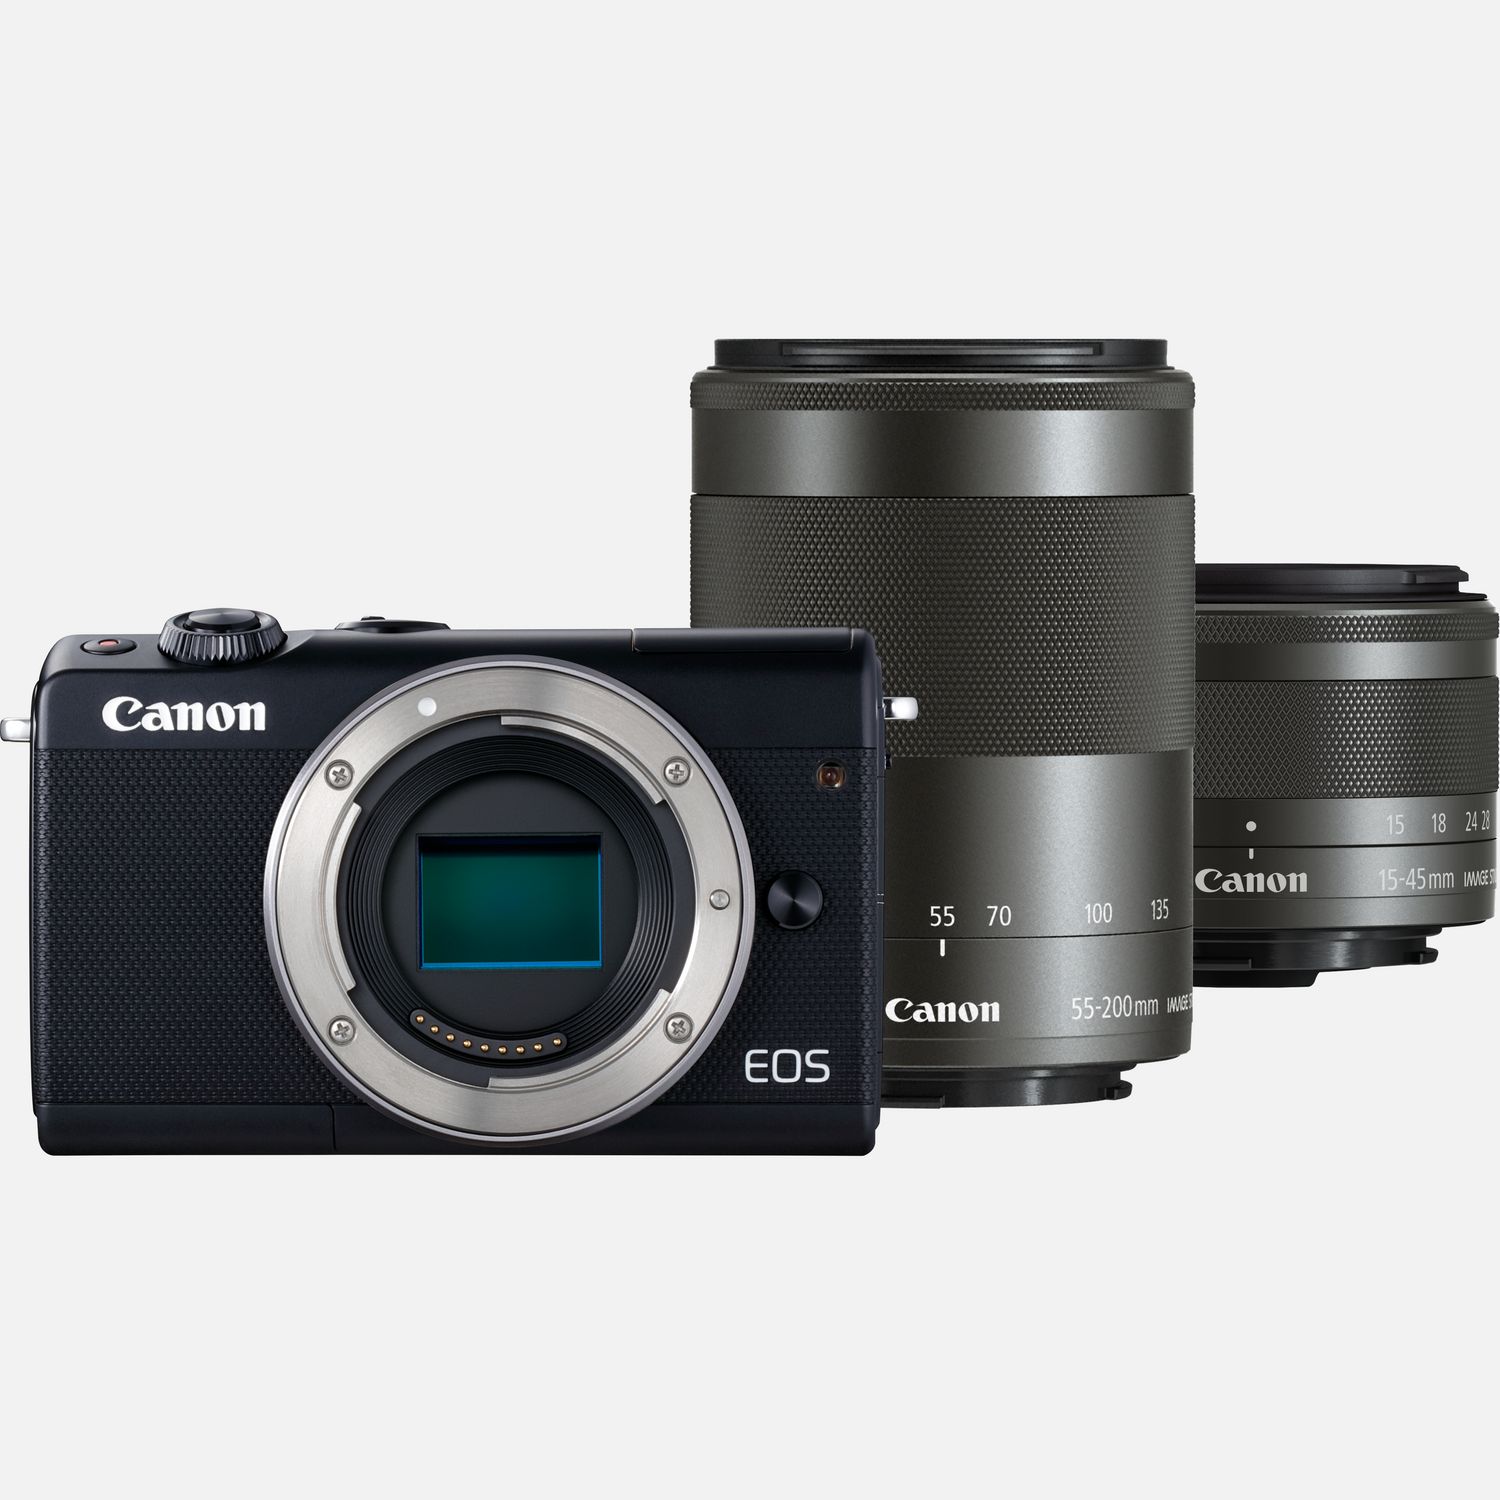 Image of Canon EOS M100 nera + Obiettivo EF-M 15-45mm IS STM nero + Obiettivo EF-M 55-200mm IS STM nero